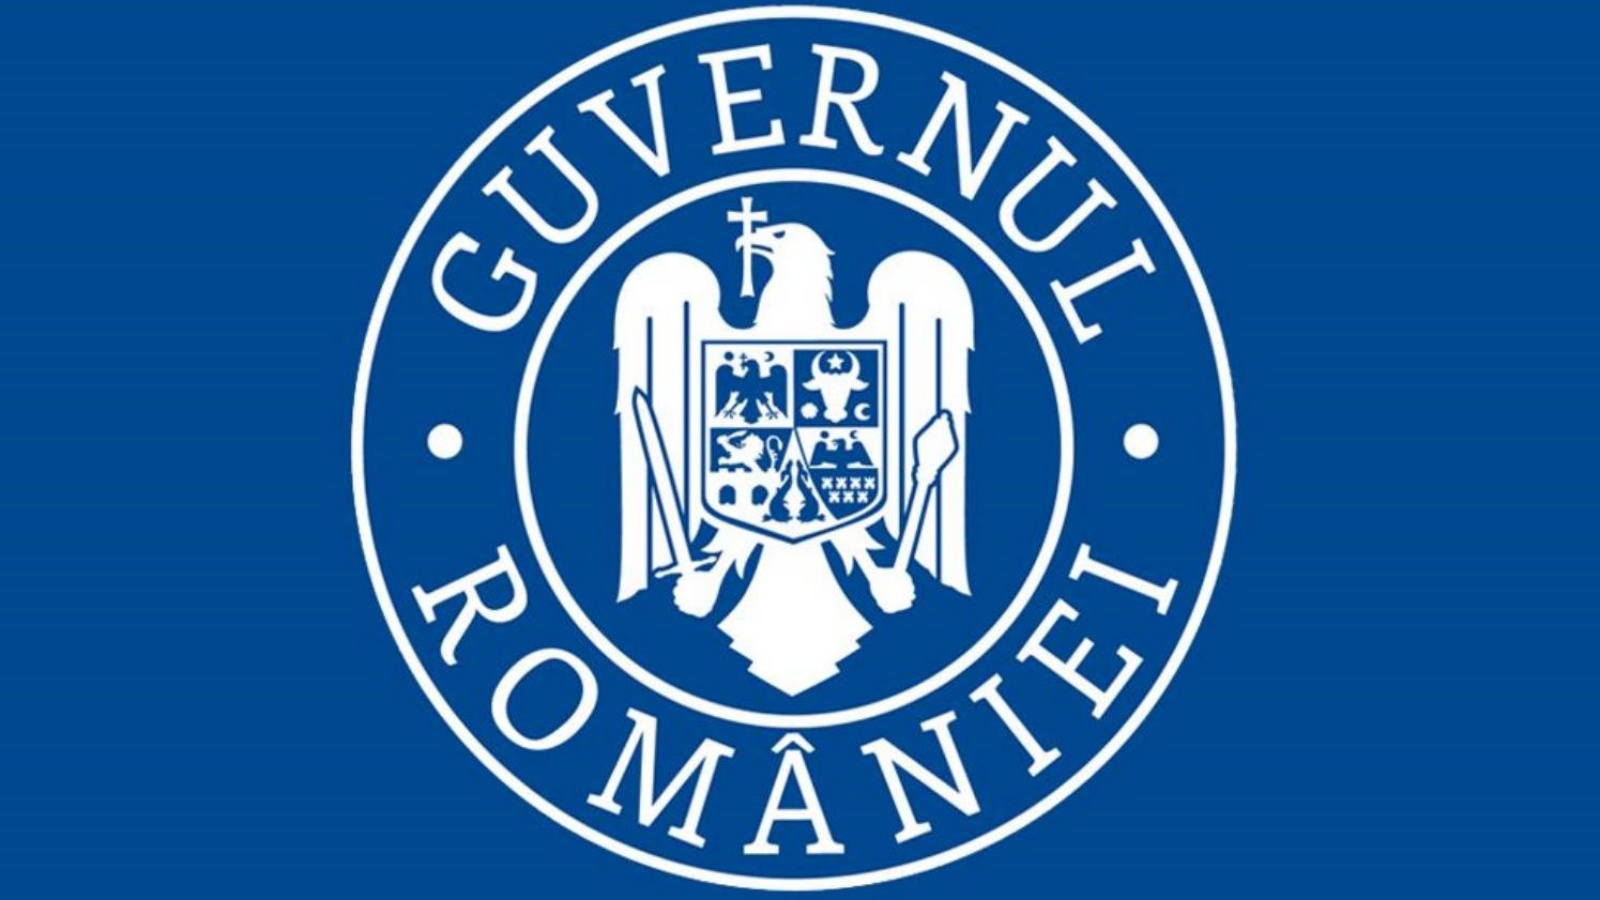 Le gouvernement de Roumanie fait don de 11 ambulances aux services d'urgence en Ukraine